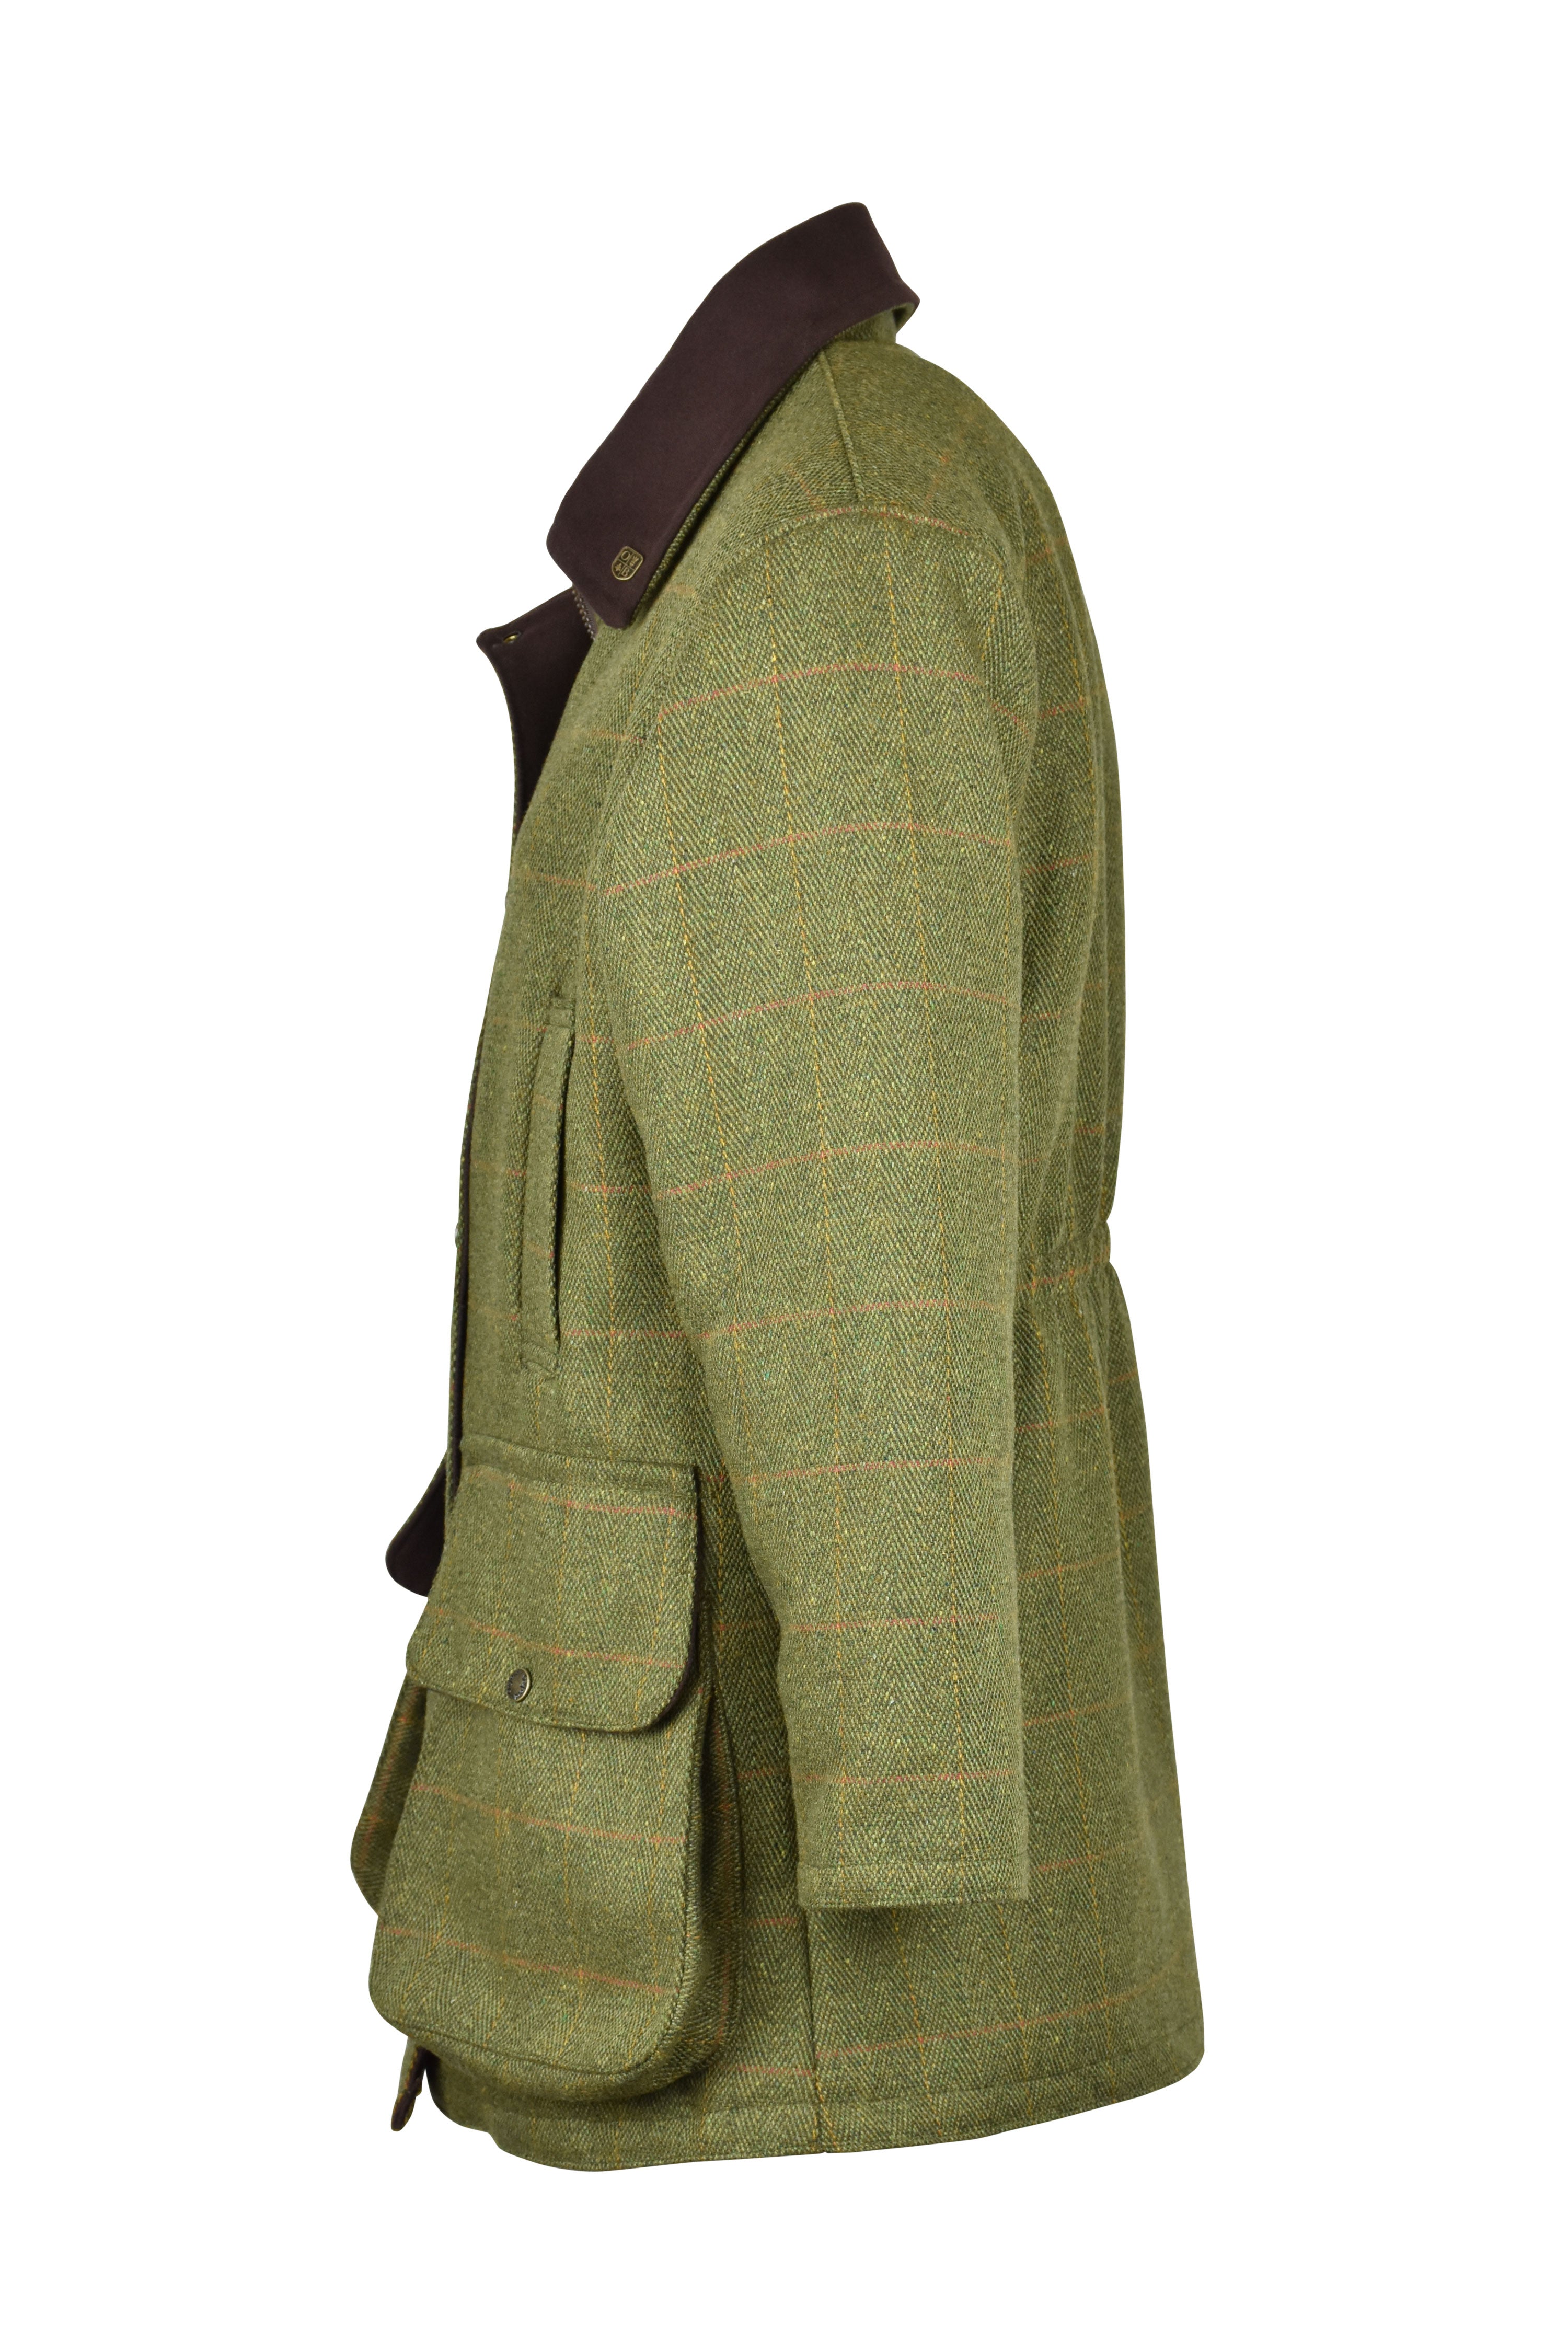 W29 - Ladies Brampton Tweed Coat LOAVT (5433/22) - Oxford Blue